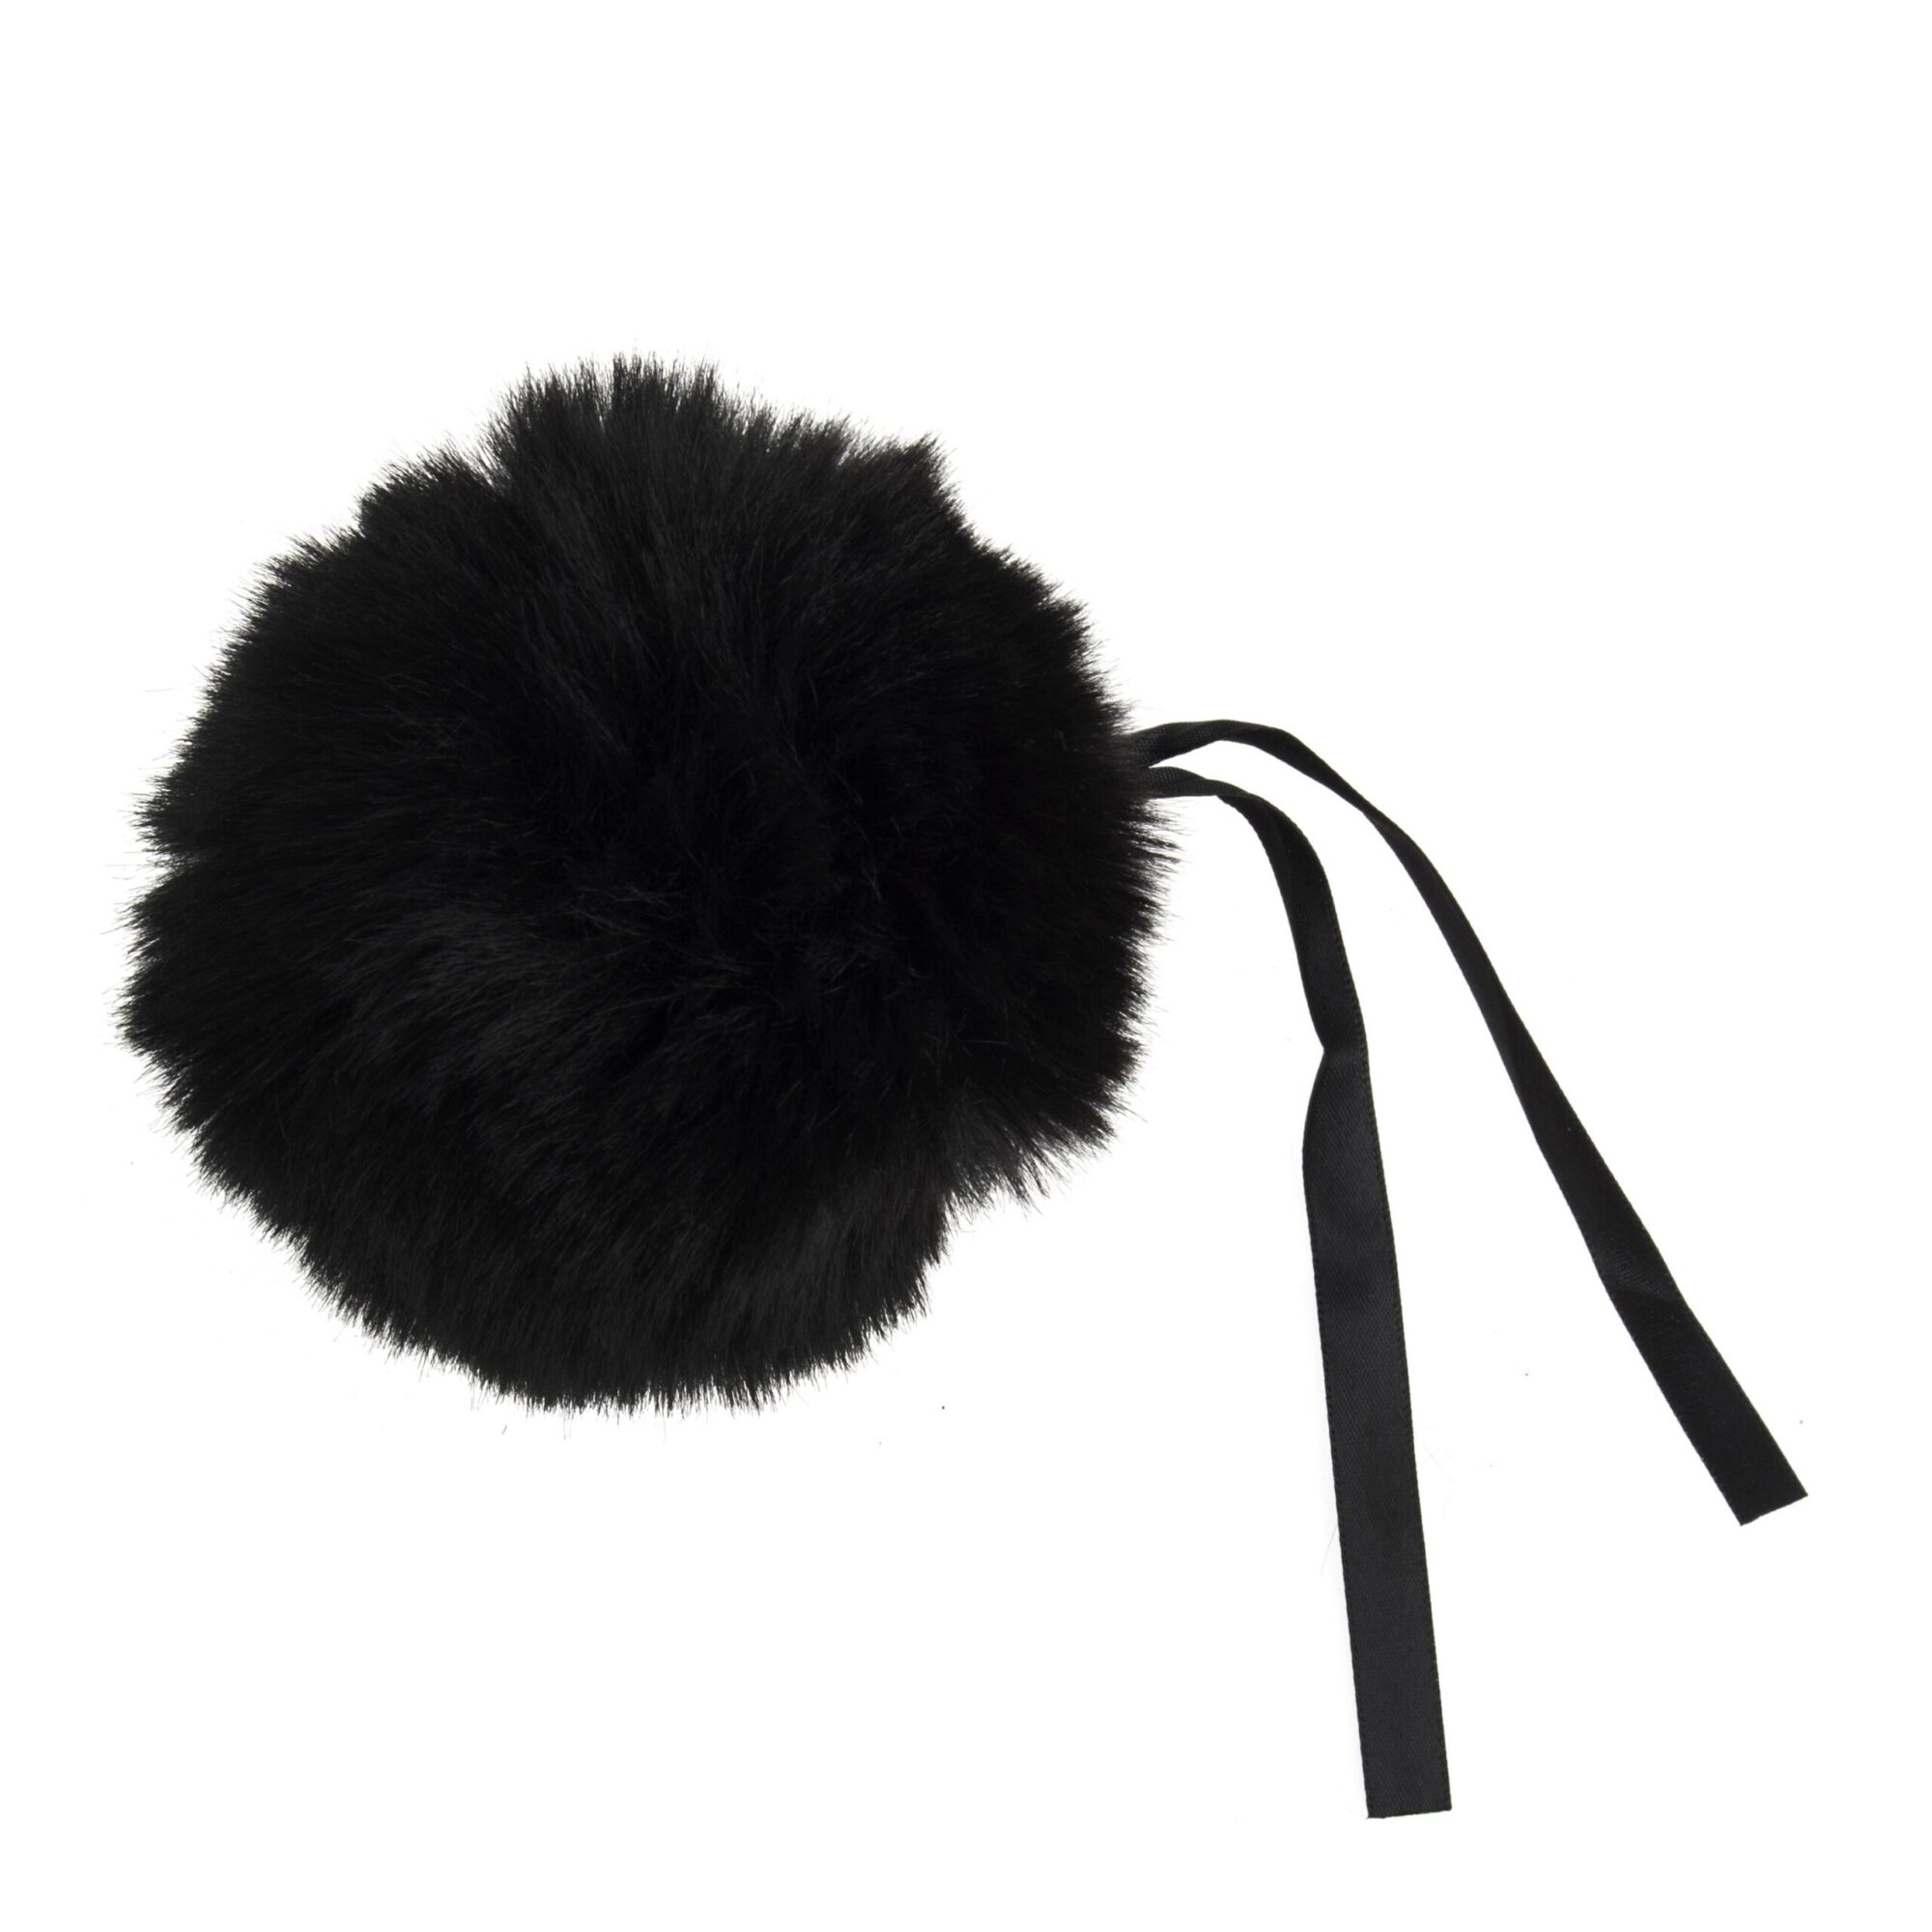 Large Faux Fur Pom Pom 11cm - Black product image